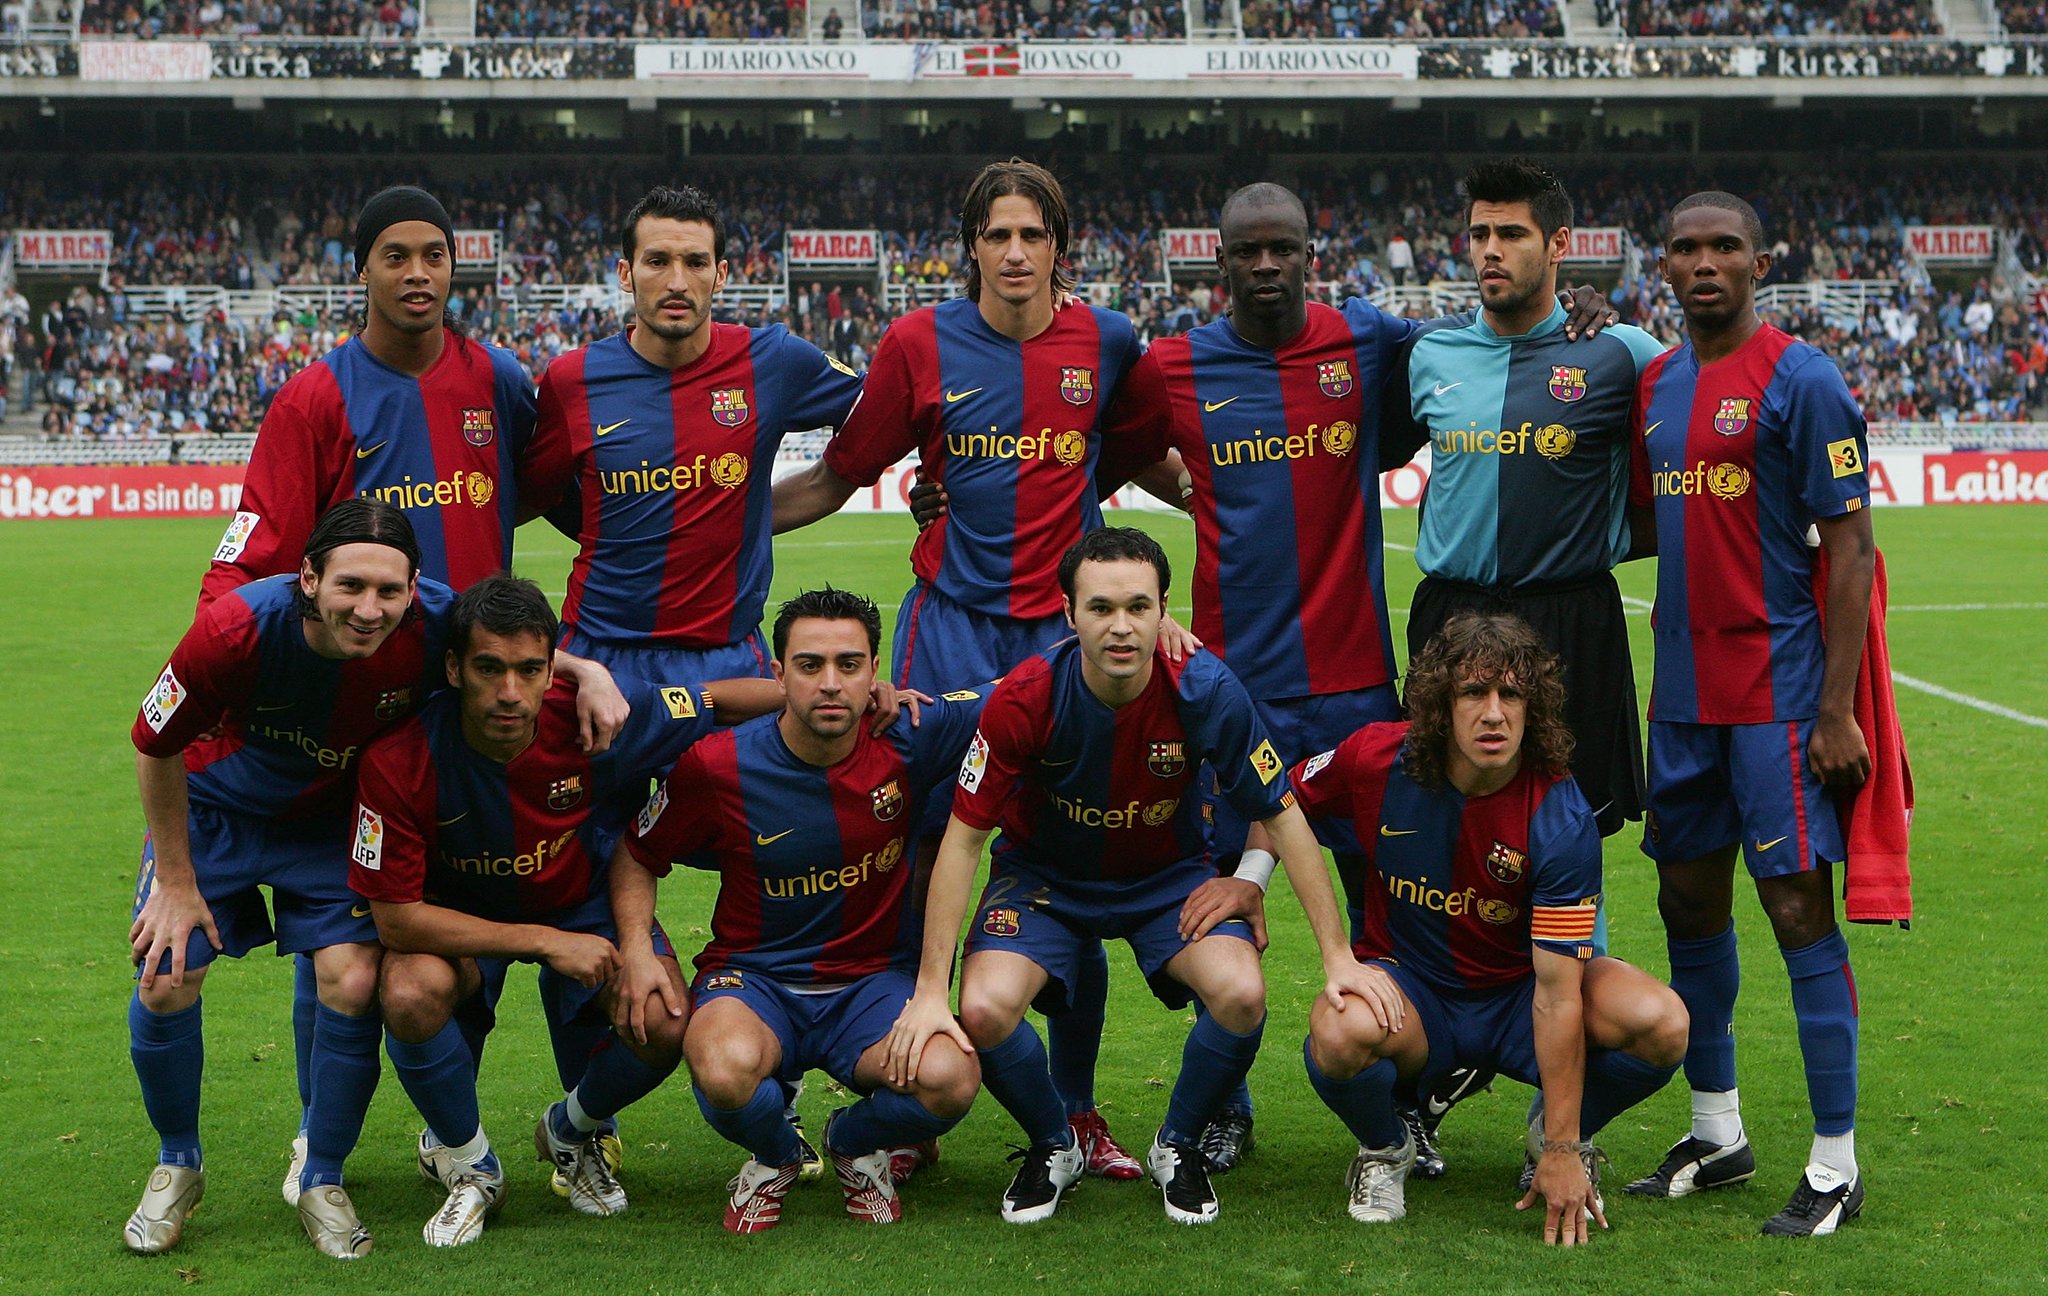 2006 barcelona kadrosu